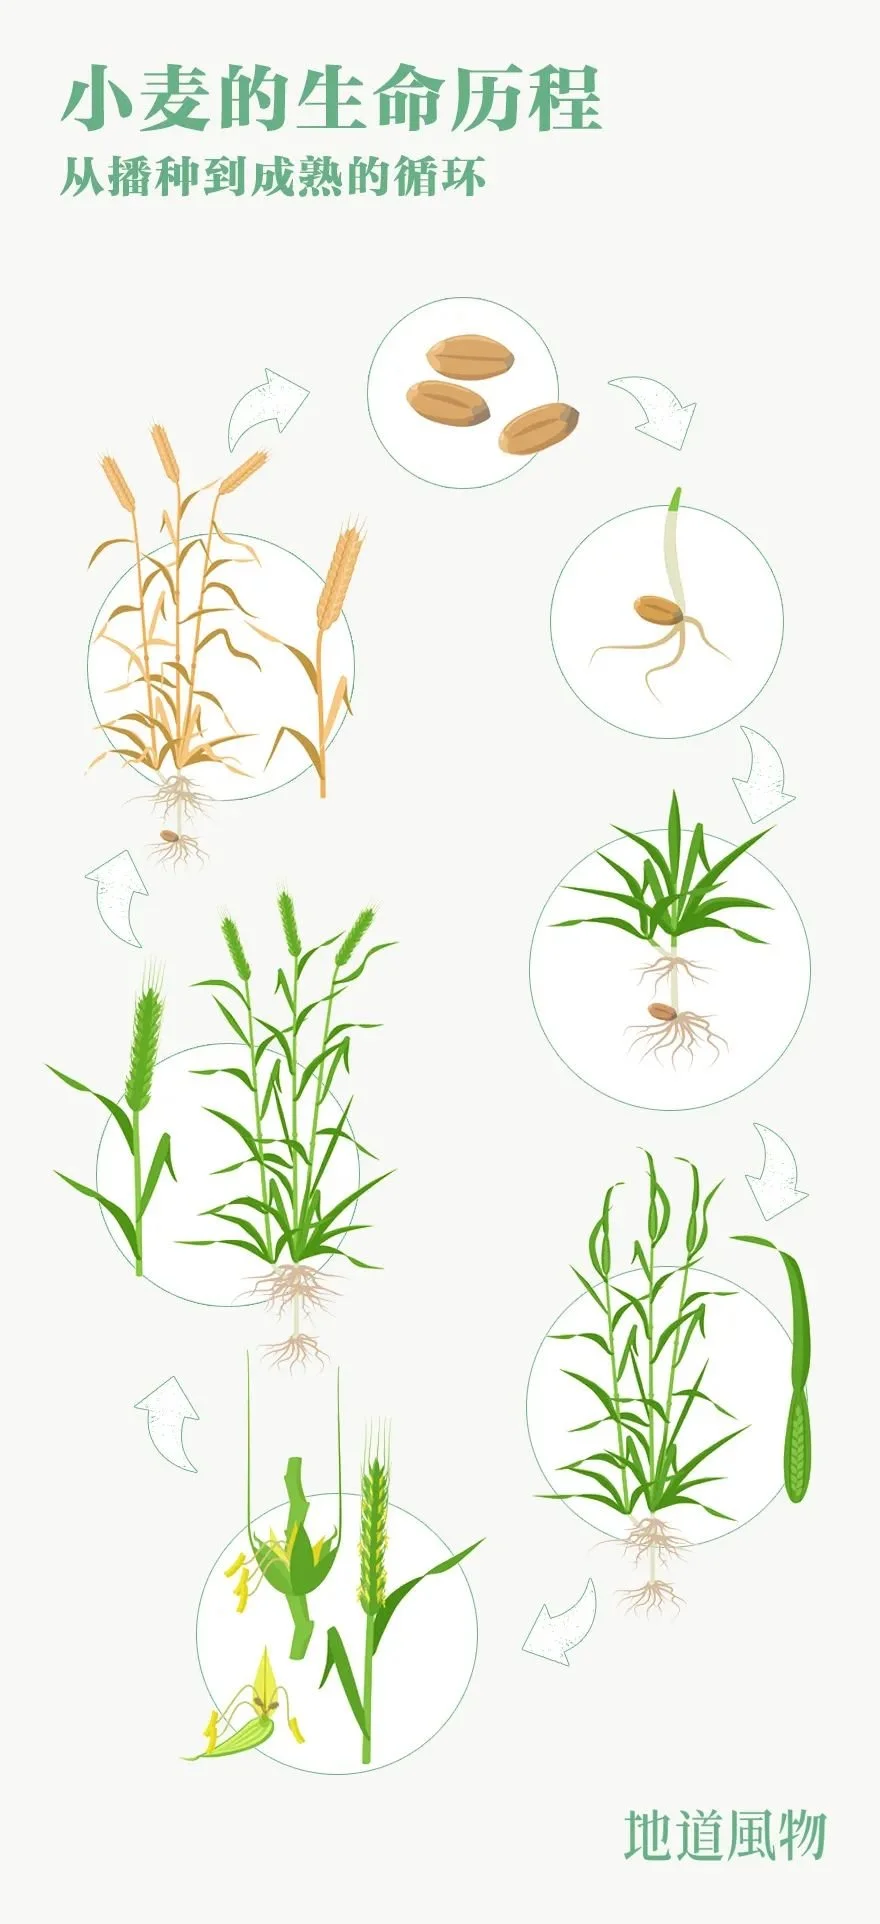 小麦一生会经历种子萌芽、出苗、生根、长叶、拔节、孕穗、抽穗、开花、结实，到产生新的种子；小麦从播种到成熟一般需要230-270天。 制图/刘航